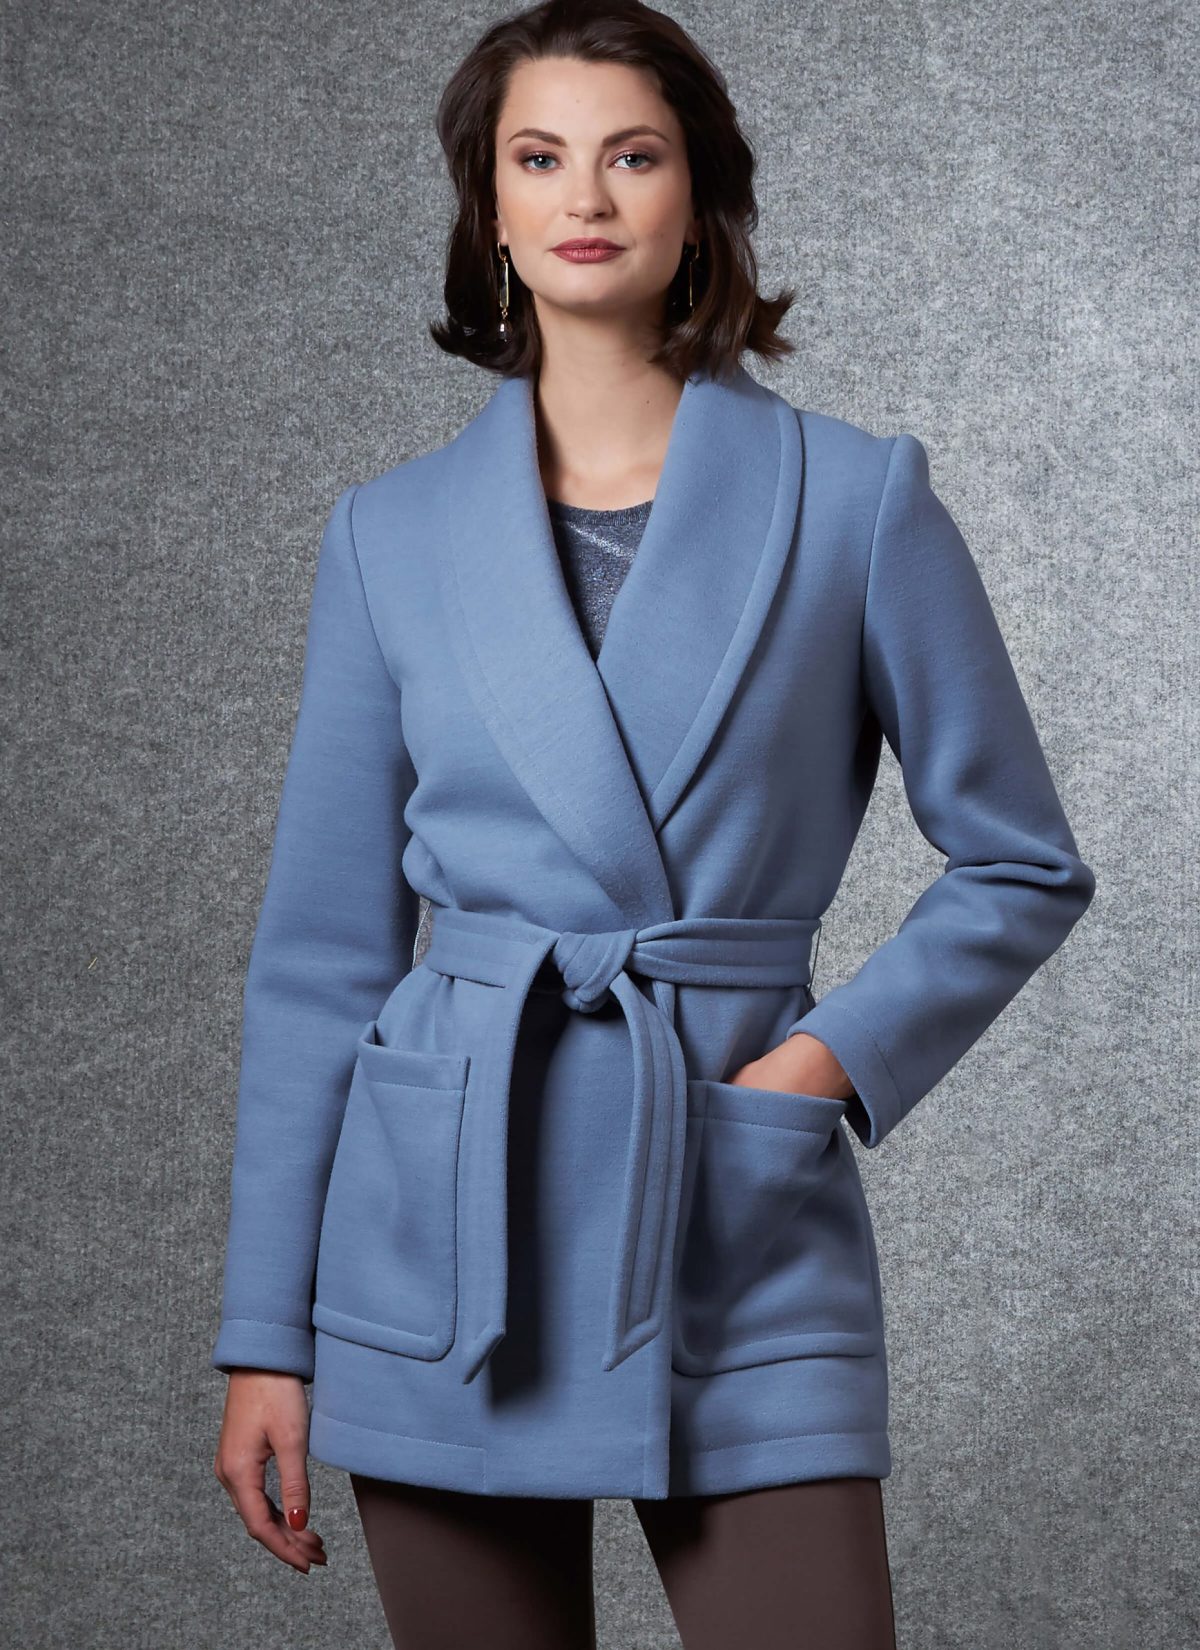 Vogue Patterns V1663 Misses' Jacket, Top & Trousers, Kathryn Brenne